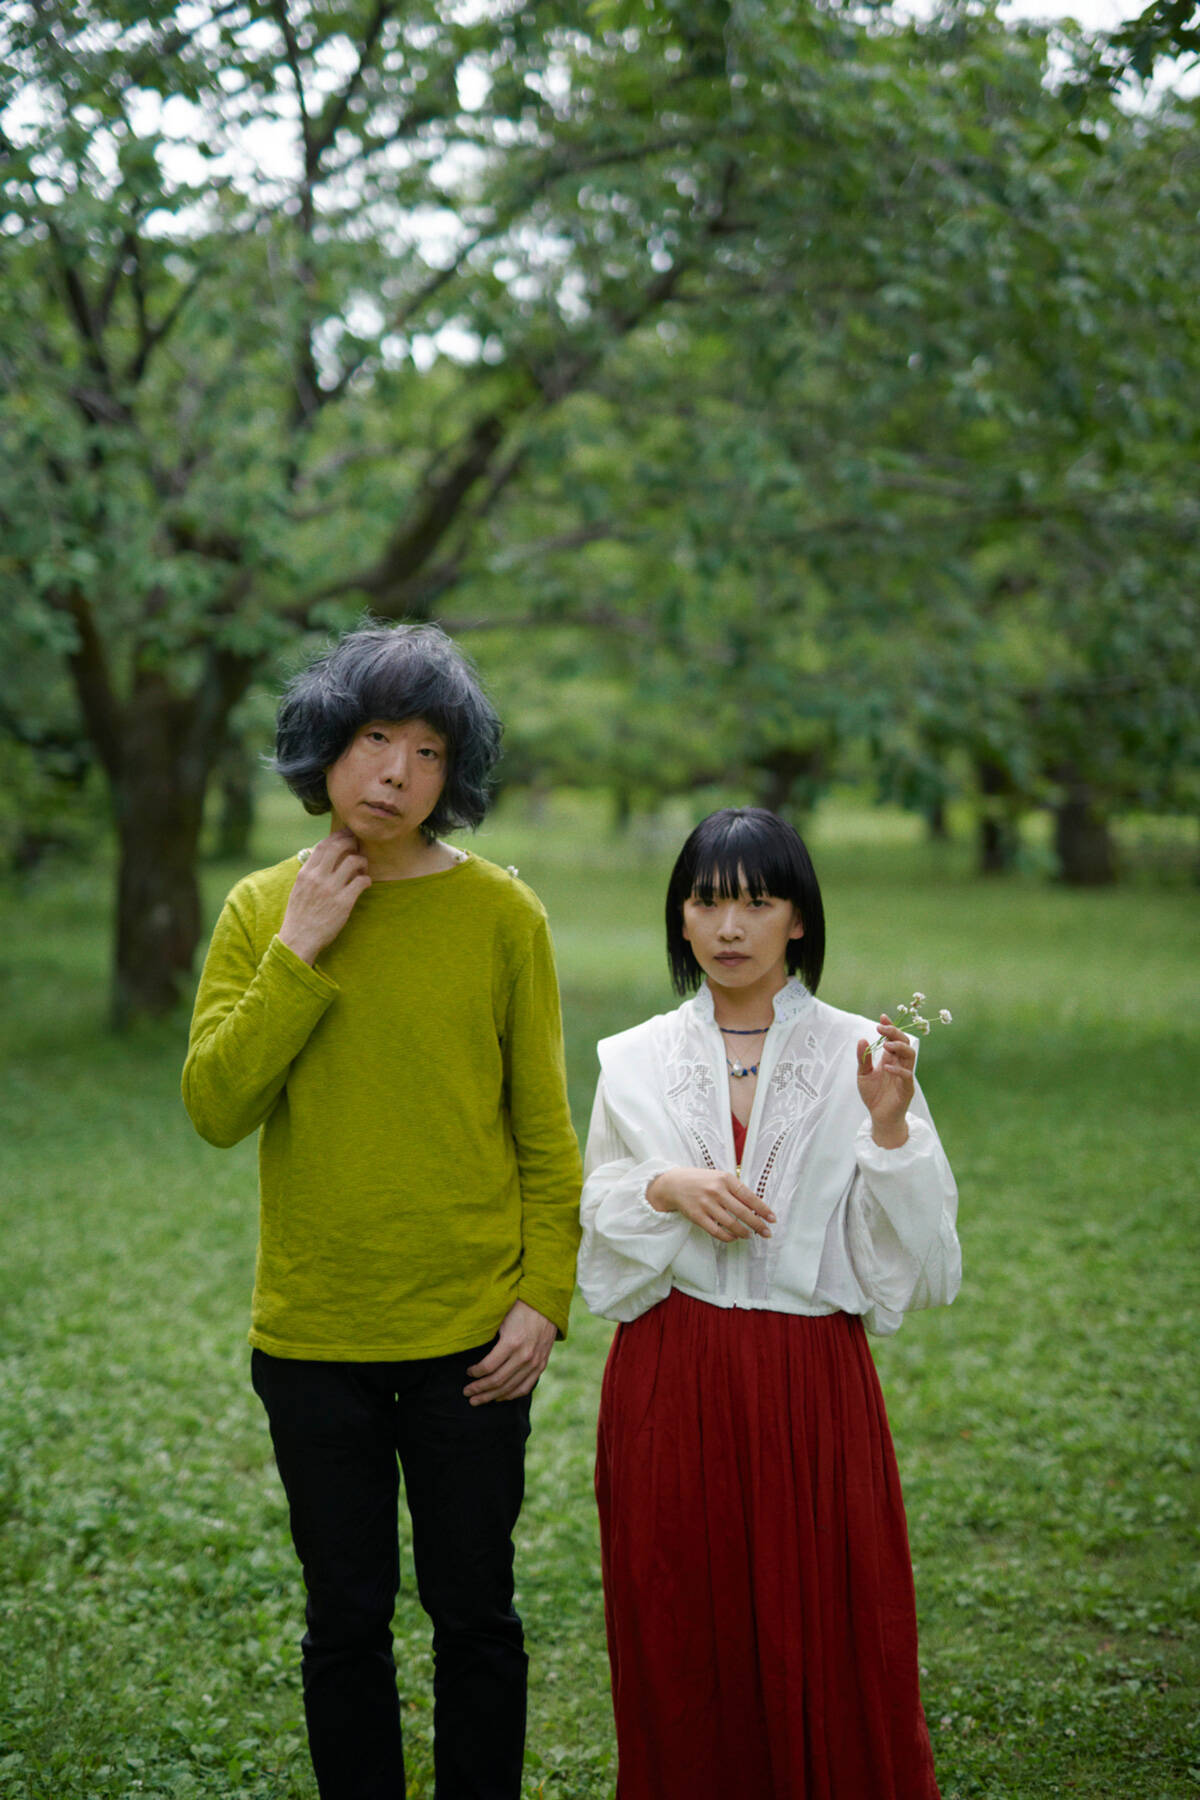 坂本慎太郎と青葉市子の「歌」は、なぜ日本語のまま海外に届いているのか。現場で得た感覚から語りあう